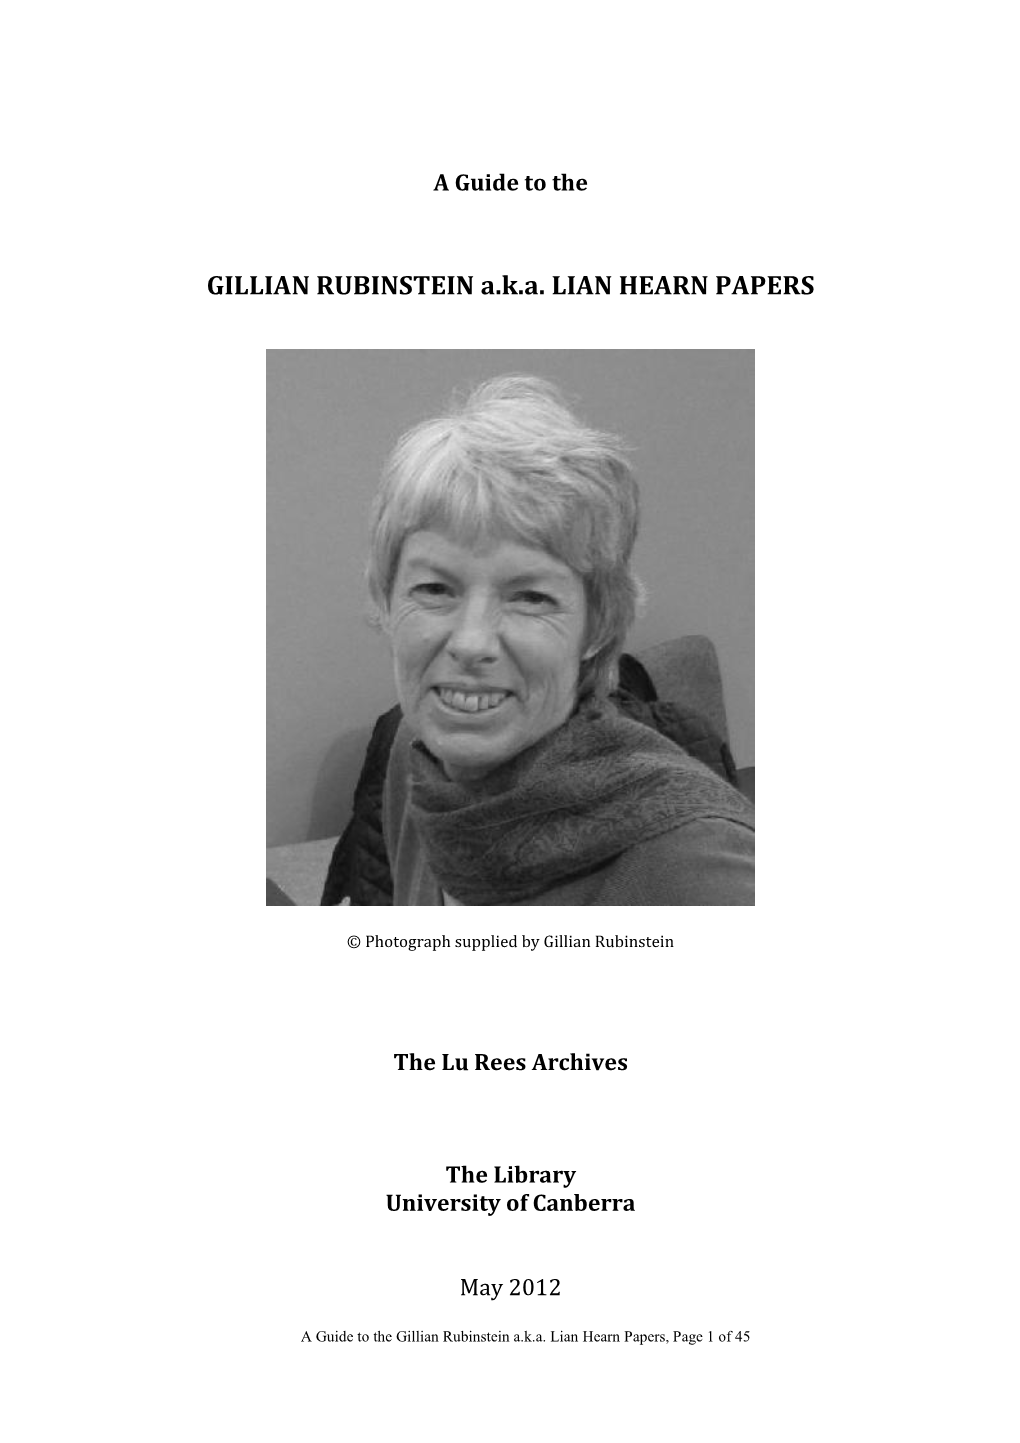 GILLIAN RUBINSTEIN A.K.A. LIAN HEARN PAPERS